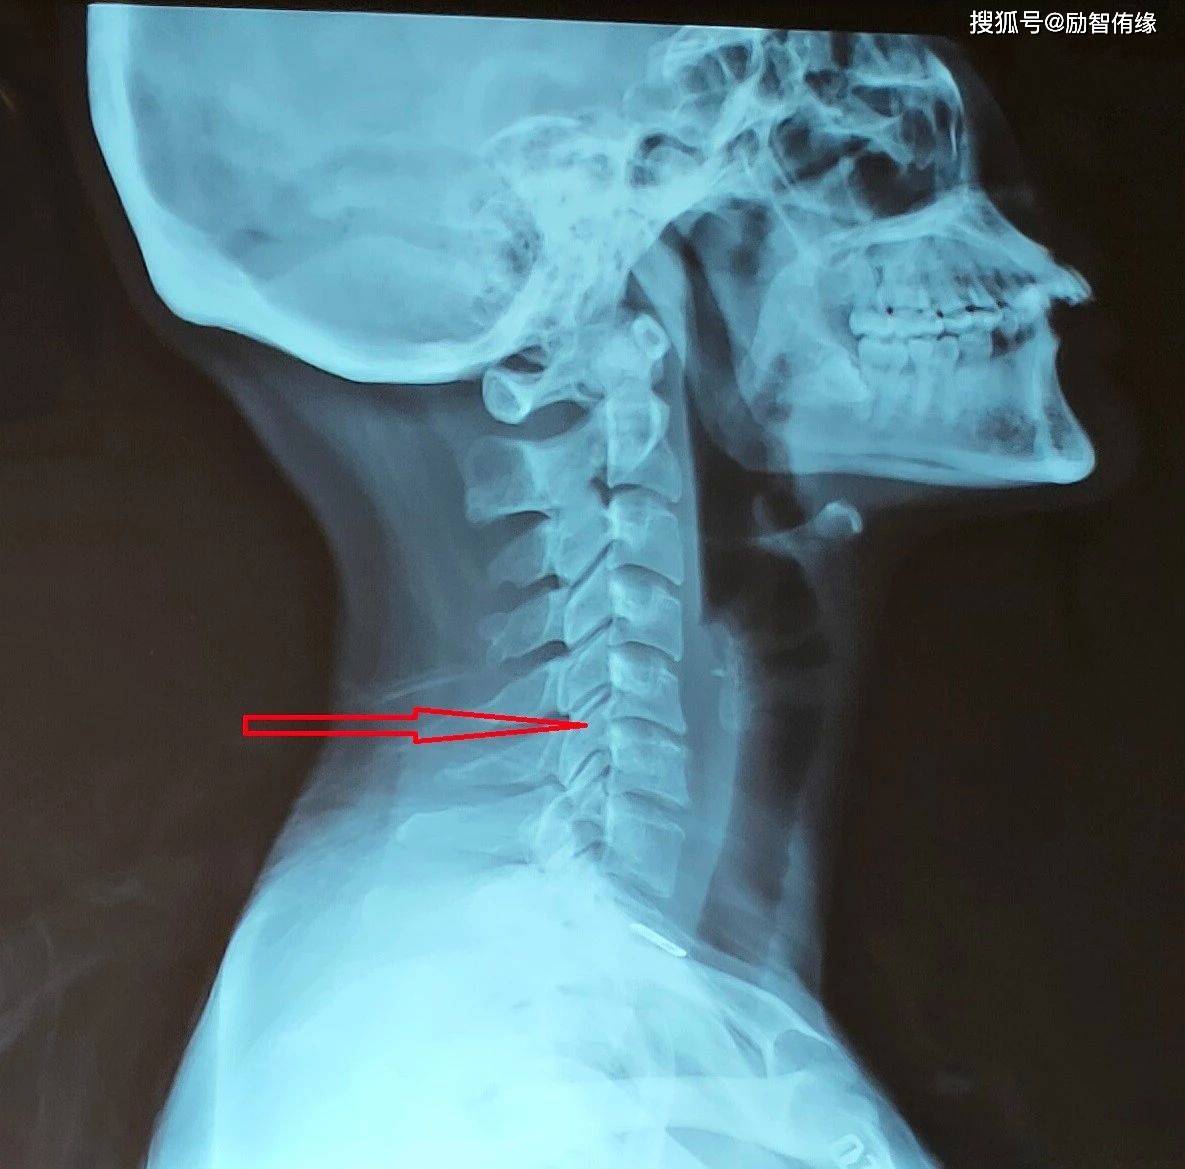 侧位x片上看到c5-6椎体后缘增生,椎间隙狭窄,提示其有椎间盘退变.